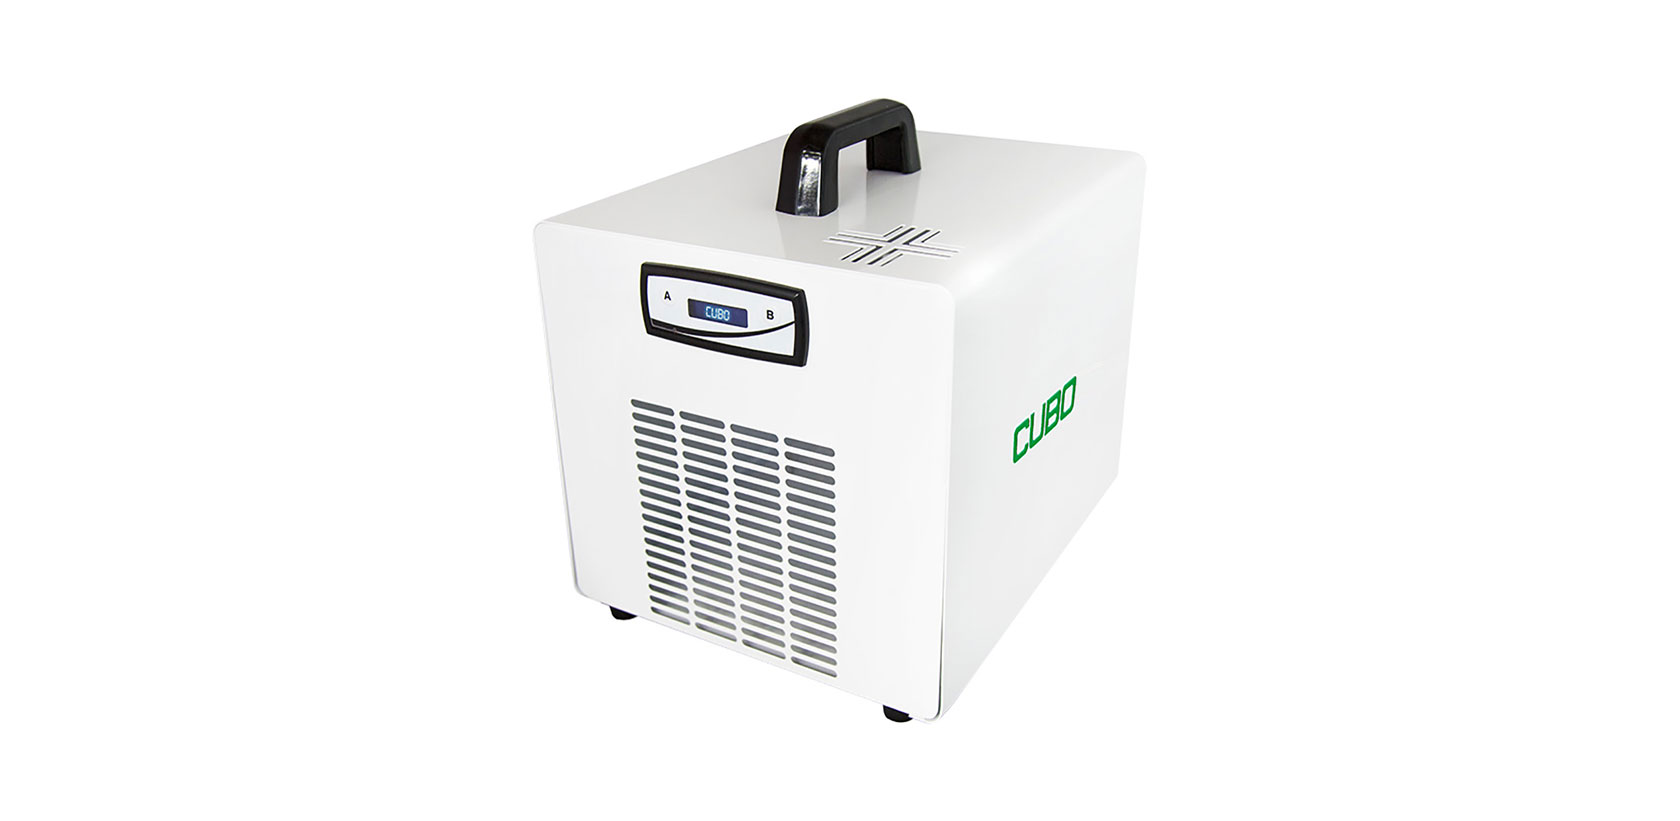 Generatore di ozono purificatore aria 10.000 mg/H,Ozono generatore Disinfettante ambienti,Purificatore D' Aria Ozono,Ozonizzatore per ambienti deodorare 